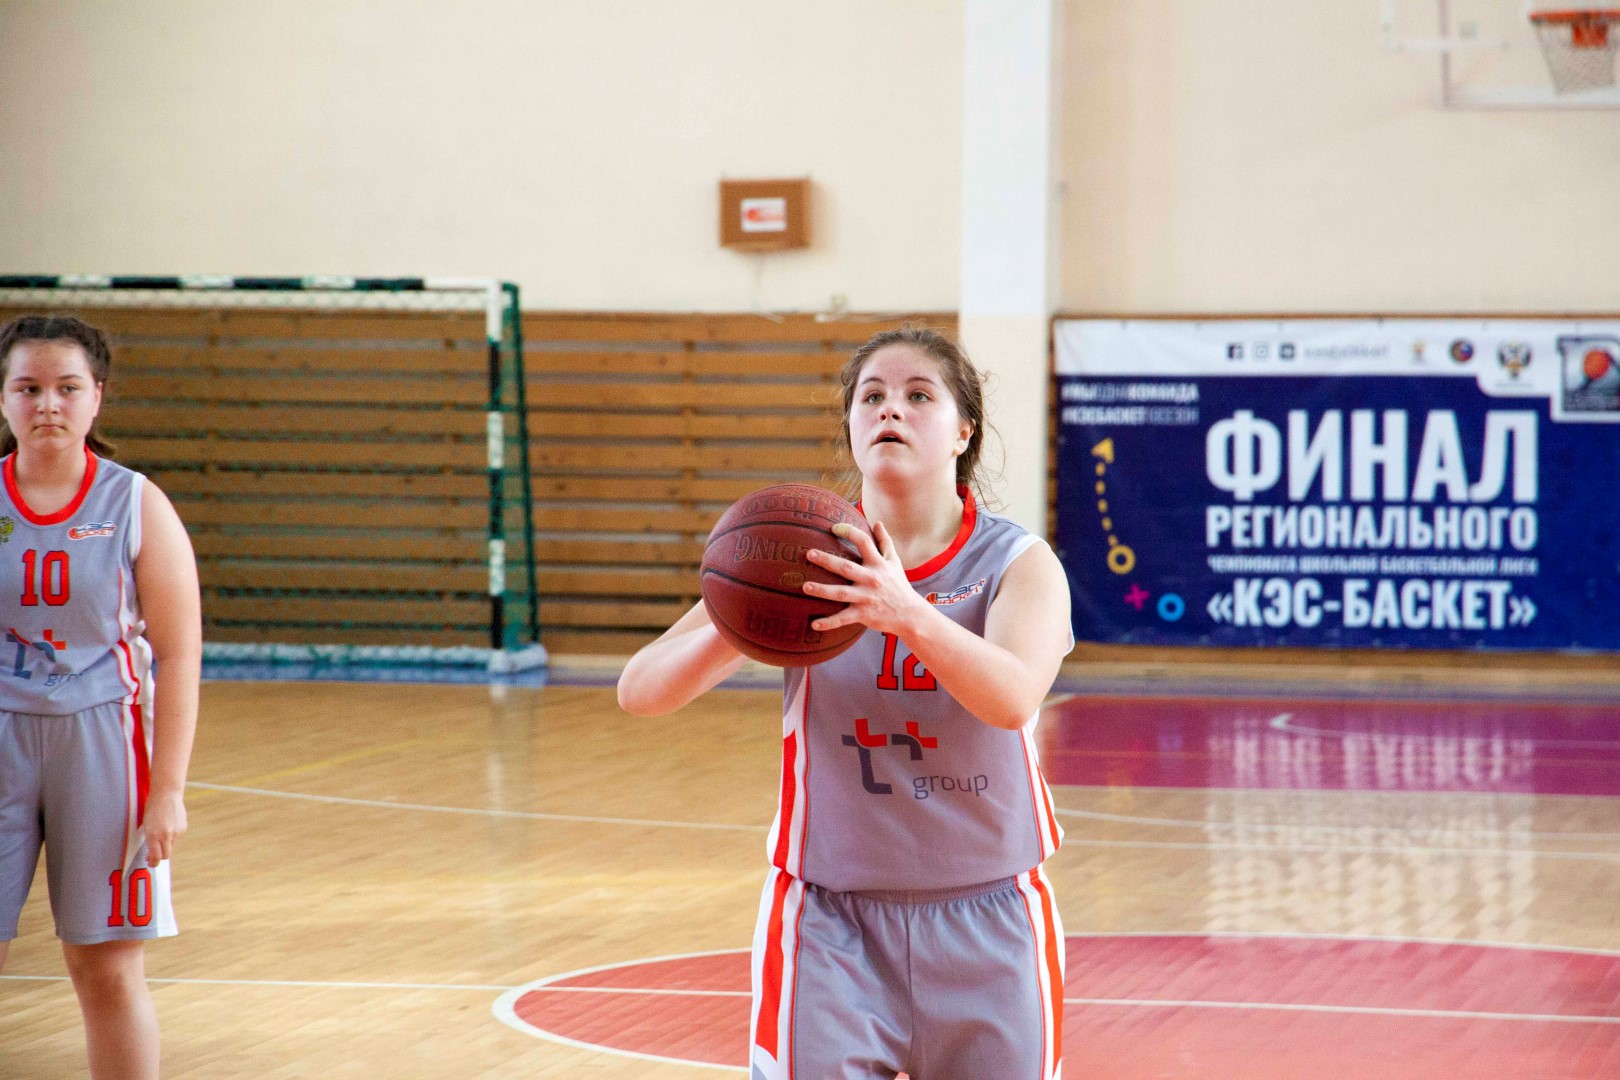 Первенство Южно-Сахалинска по баскетболу среди учащихся 7-9 классов